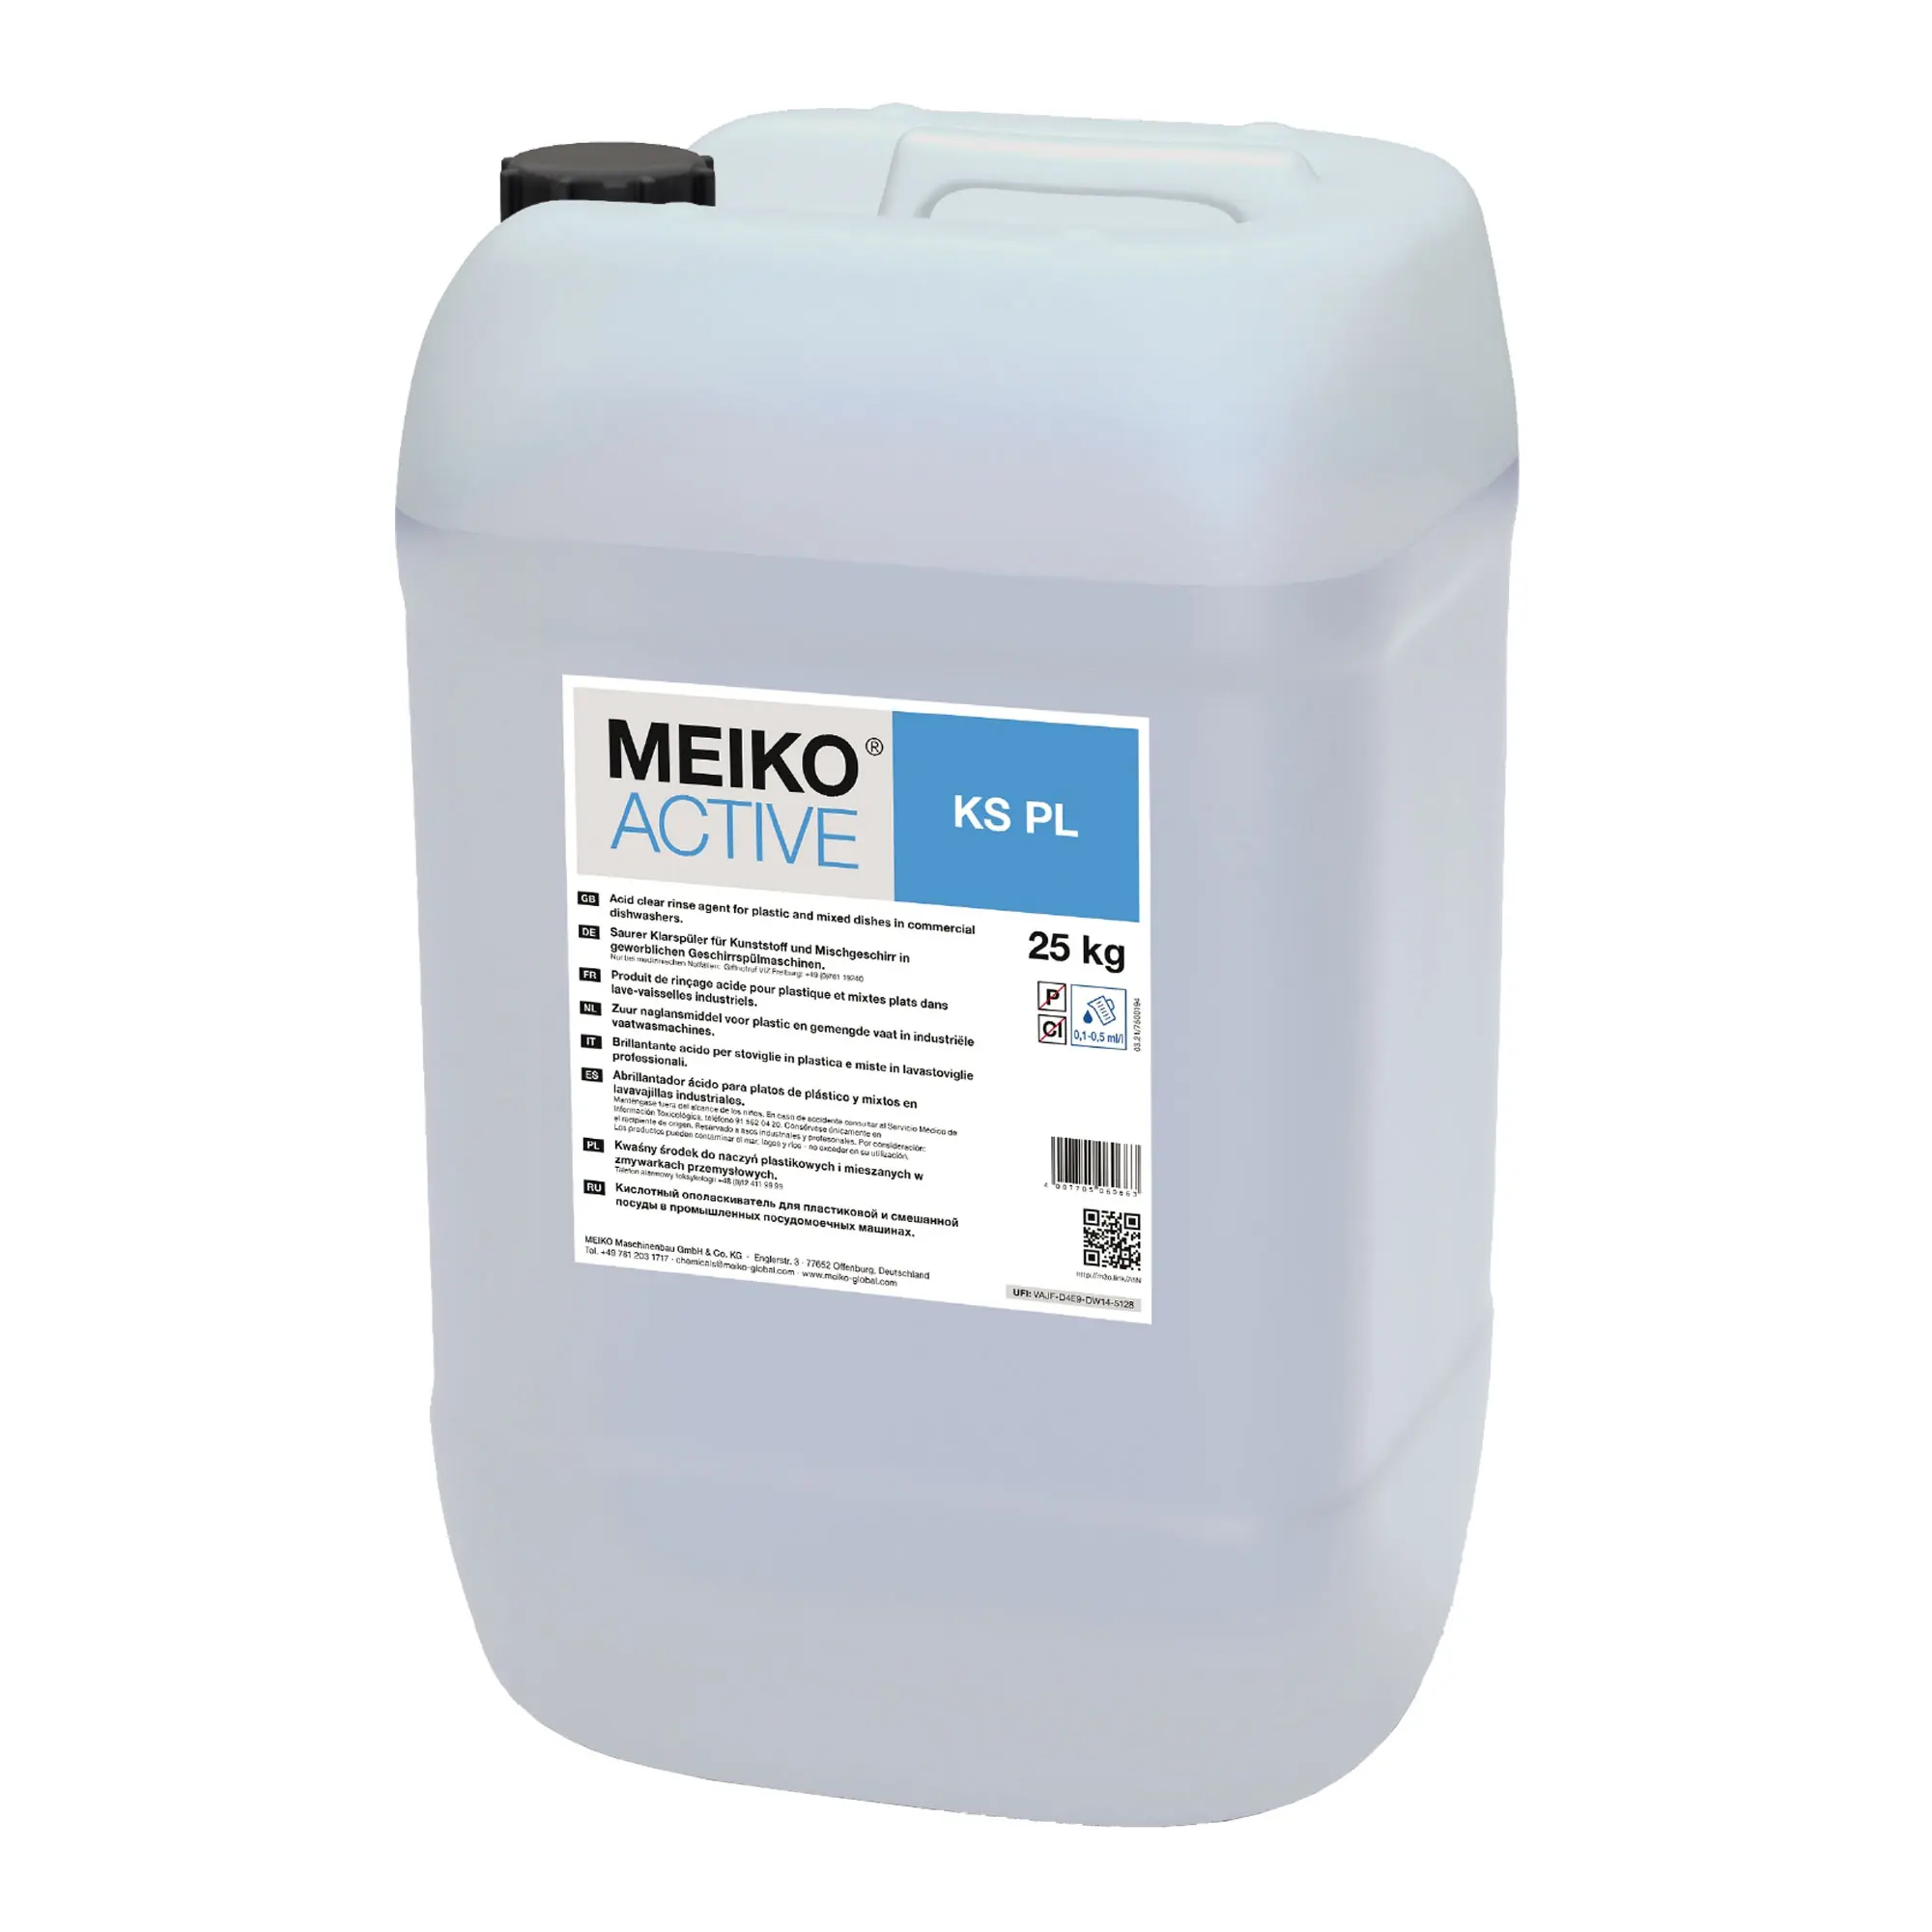 Meiko Active KS PL Spezial-Klarspüler für Kunststoff 